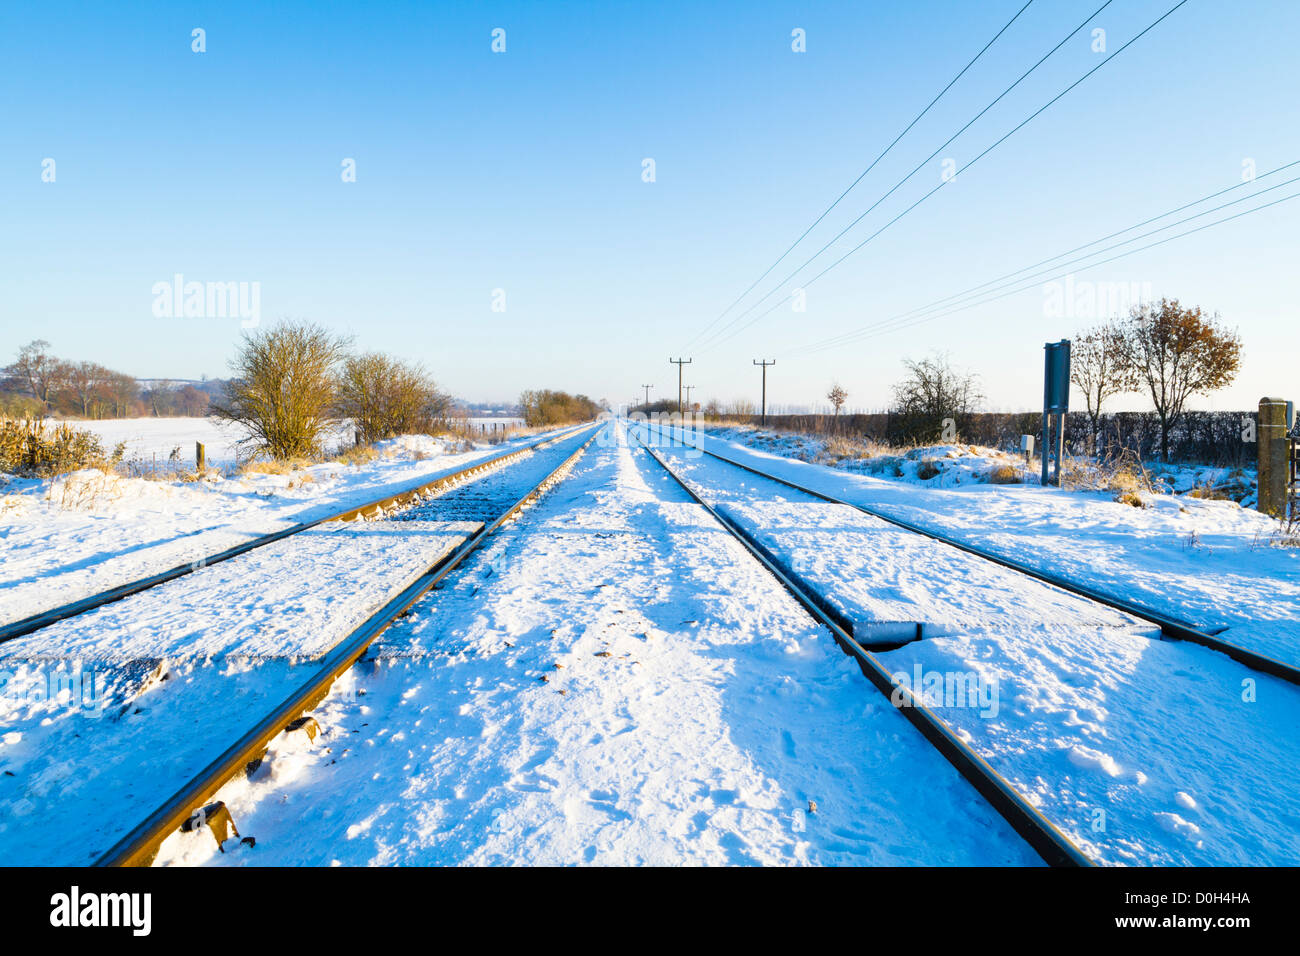 Neige de l'hiver sur des rails de chemin de fer fonctionnant en ligne droite à travers la bretagne campagne, England, UK Banque D'Images